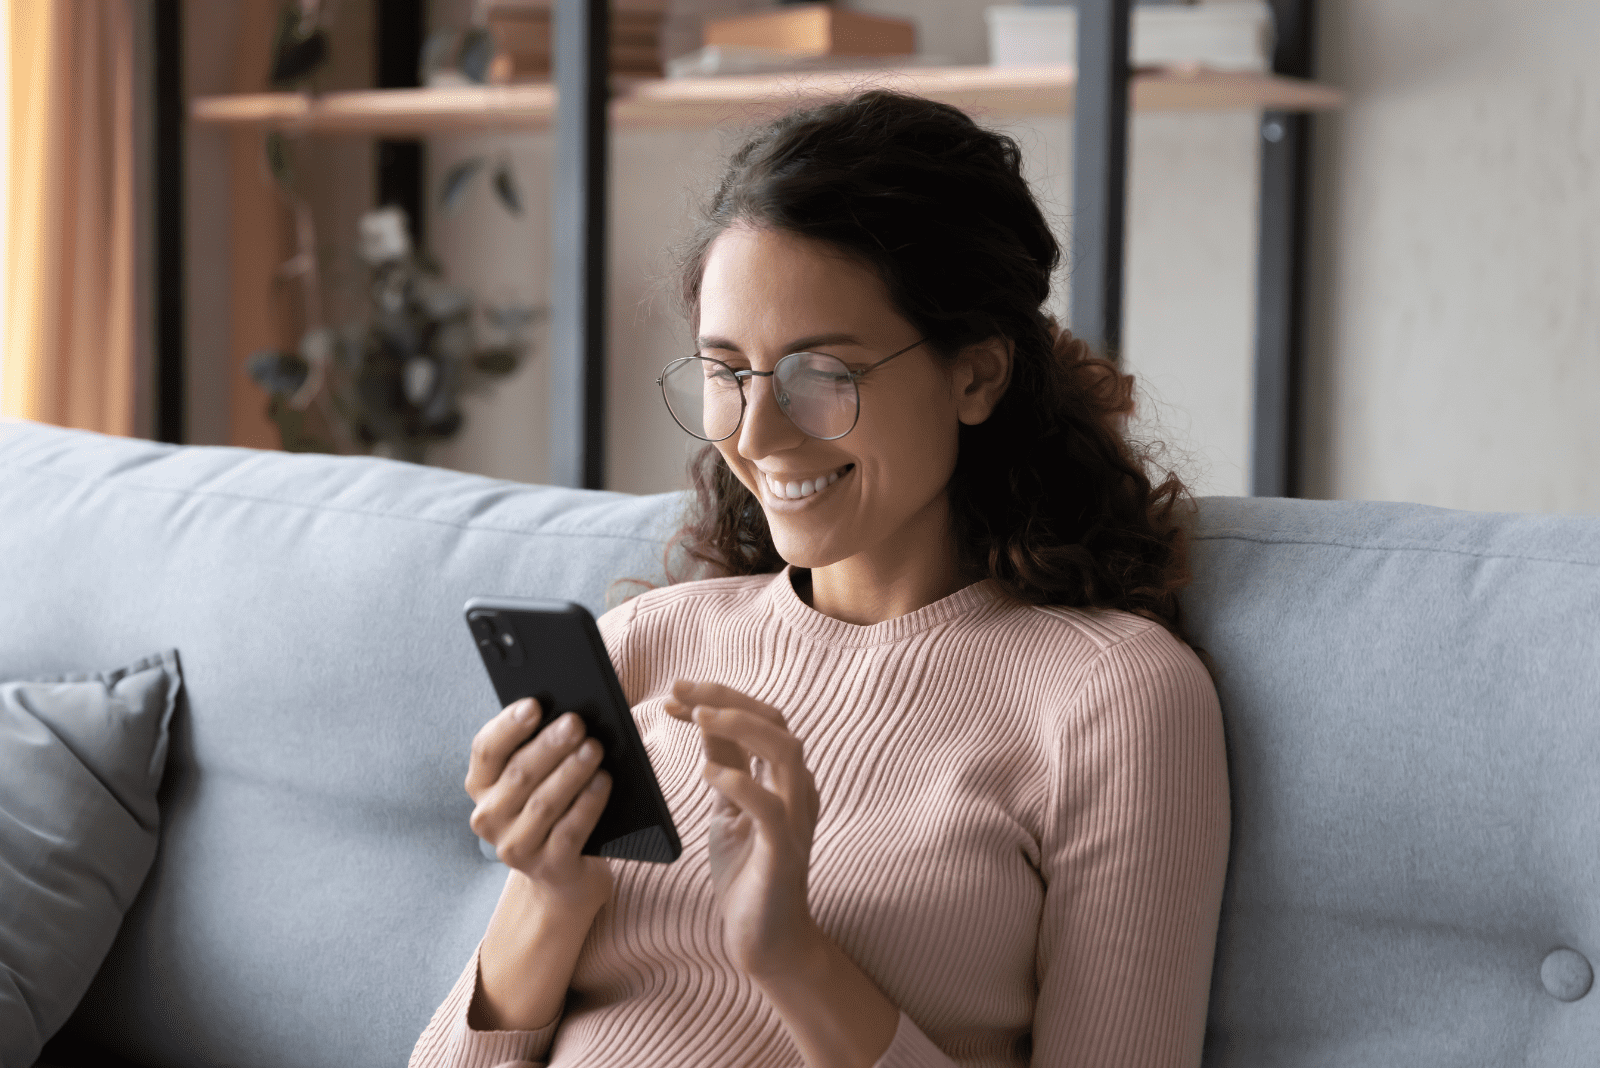 una donna sorridente con gli occhiali è seduta sul divano e digita su un telefono cellulare